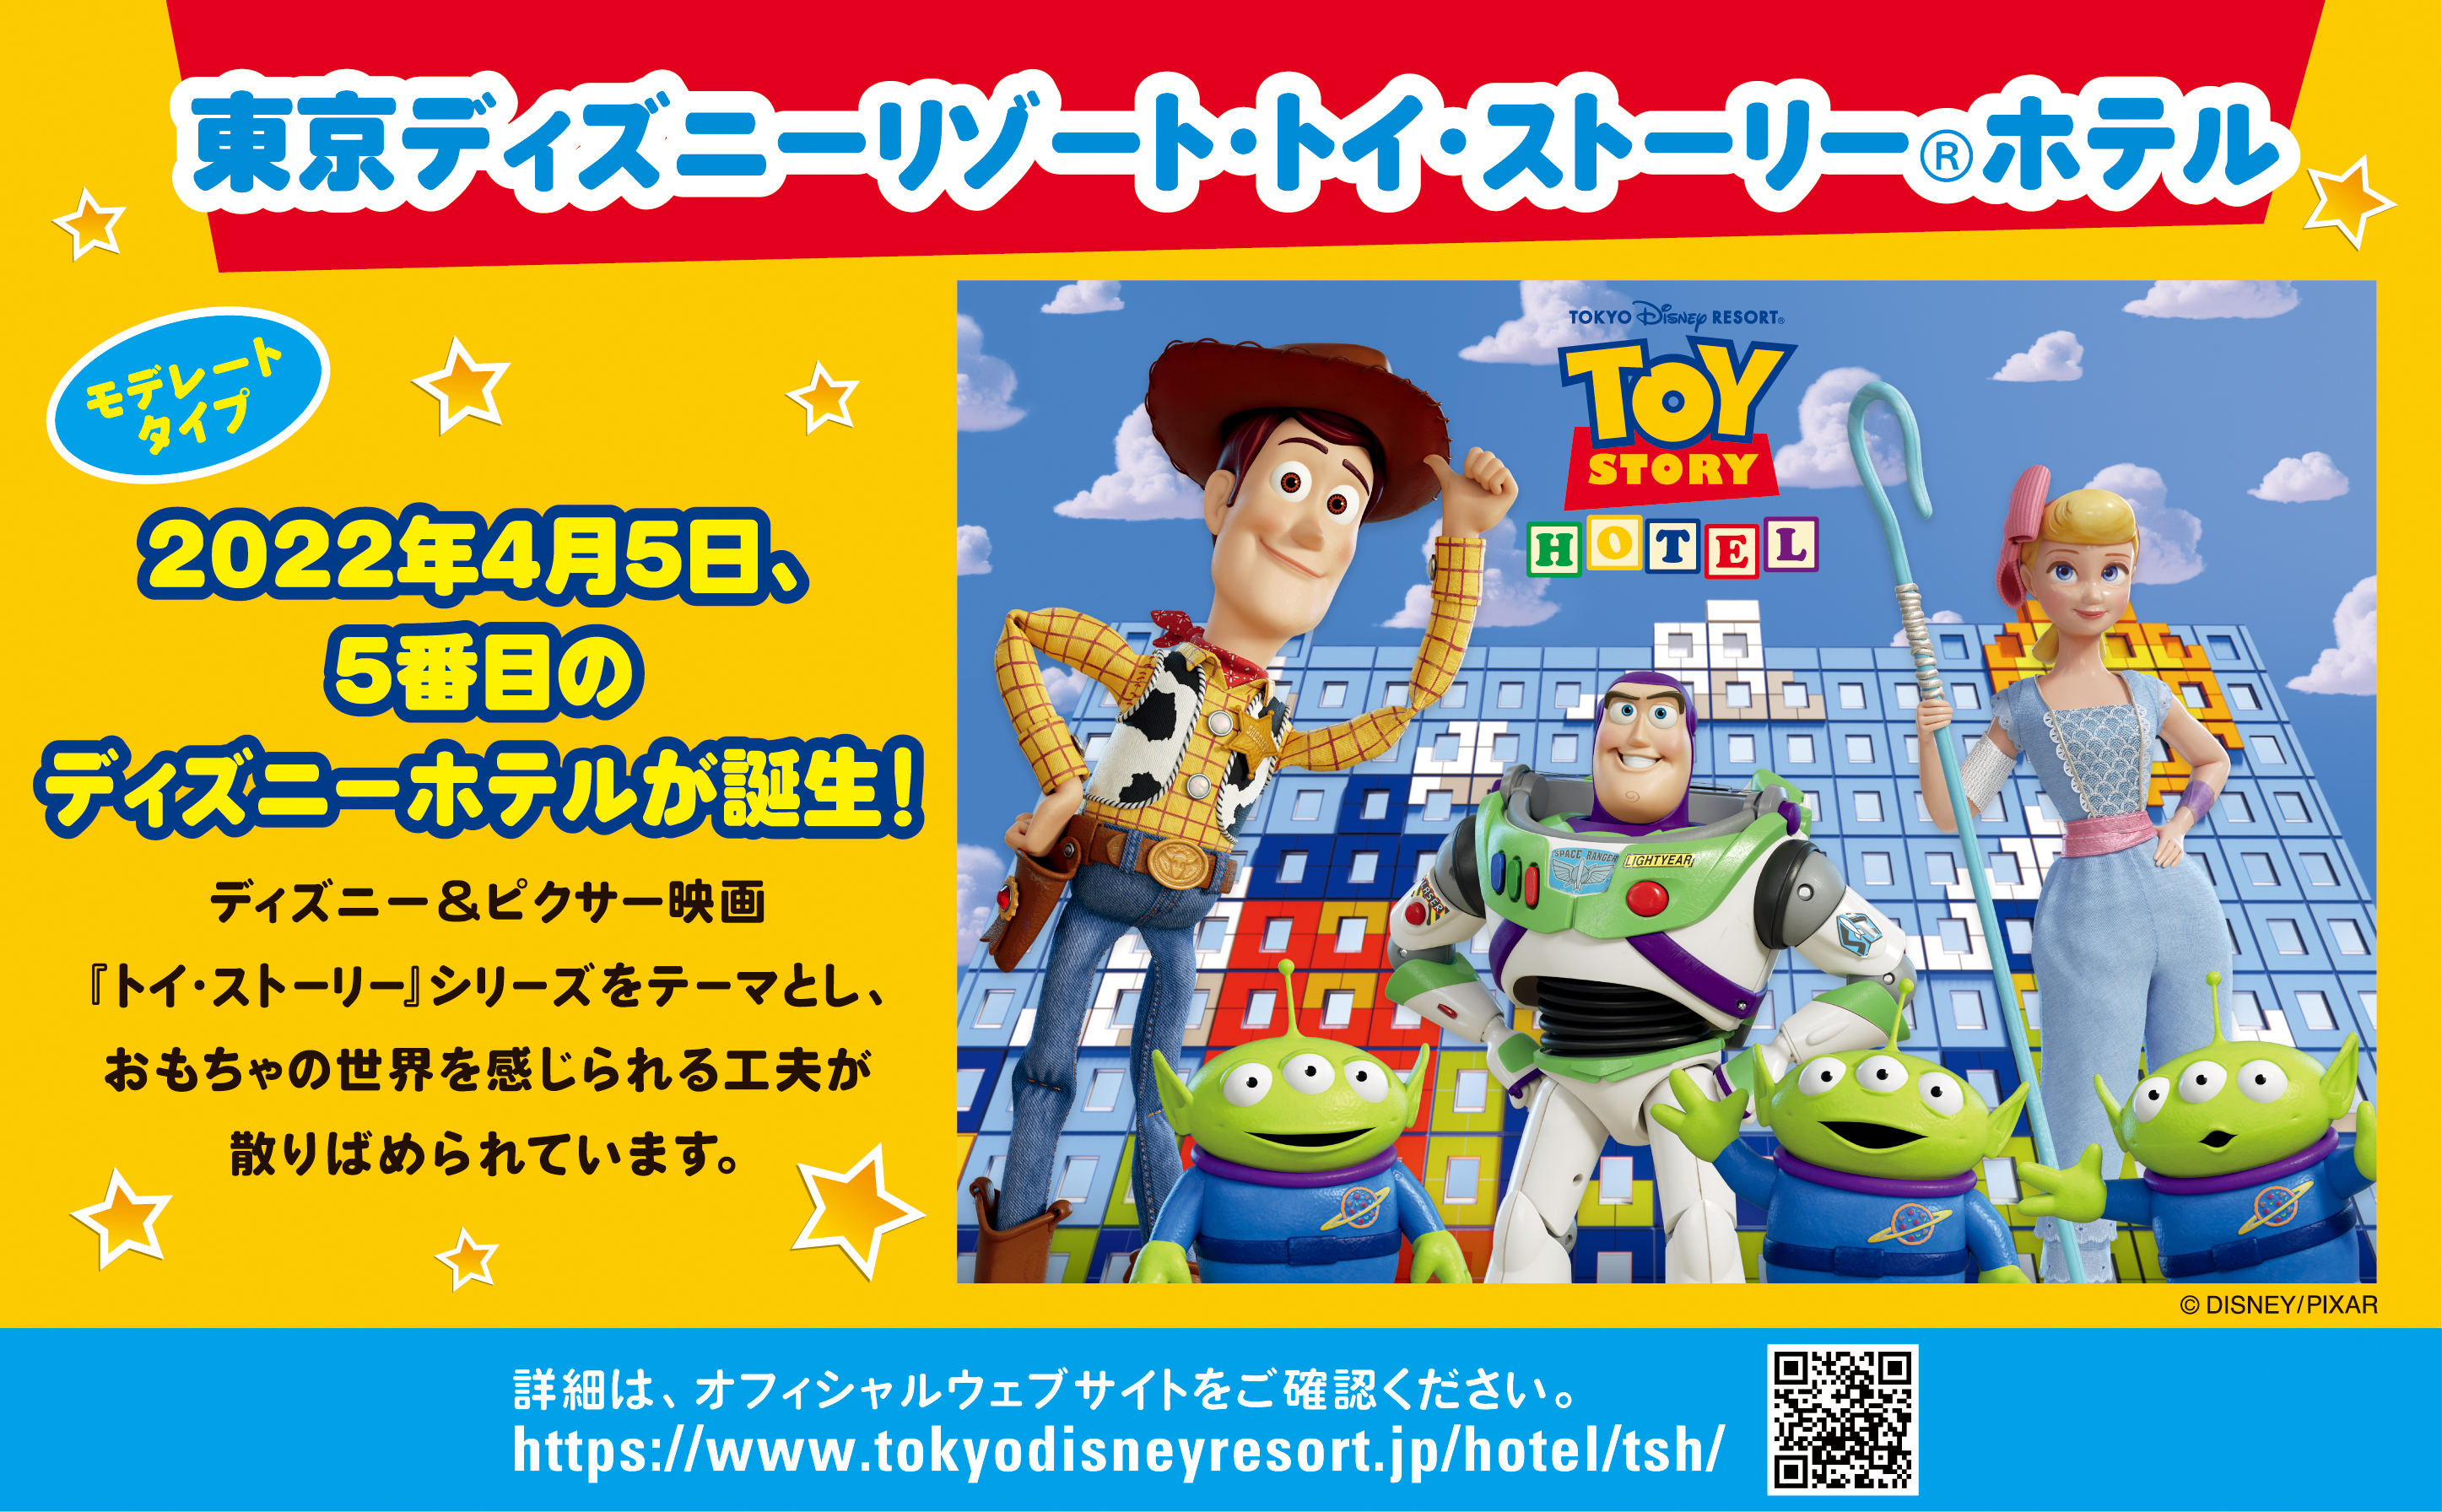 東京ディズニーリゾート・トイ・ストーリー（R）ホテル モデレートタイプ 2022年4月5日、5番目のディズニーホテルが誕生！ディズニー&ピクサー映画「トイ・ストーリー」シリーズをテーマとし、おもちゃの世界を感じられる工夫が散りばめられています。詳細はオフィシャルウェブサイトをご確認ください。https://www.tokyodisneyresort.jp/hotel/tsh/